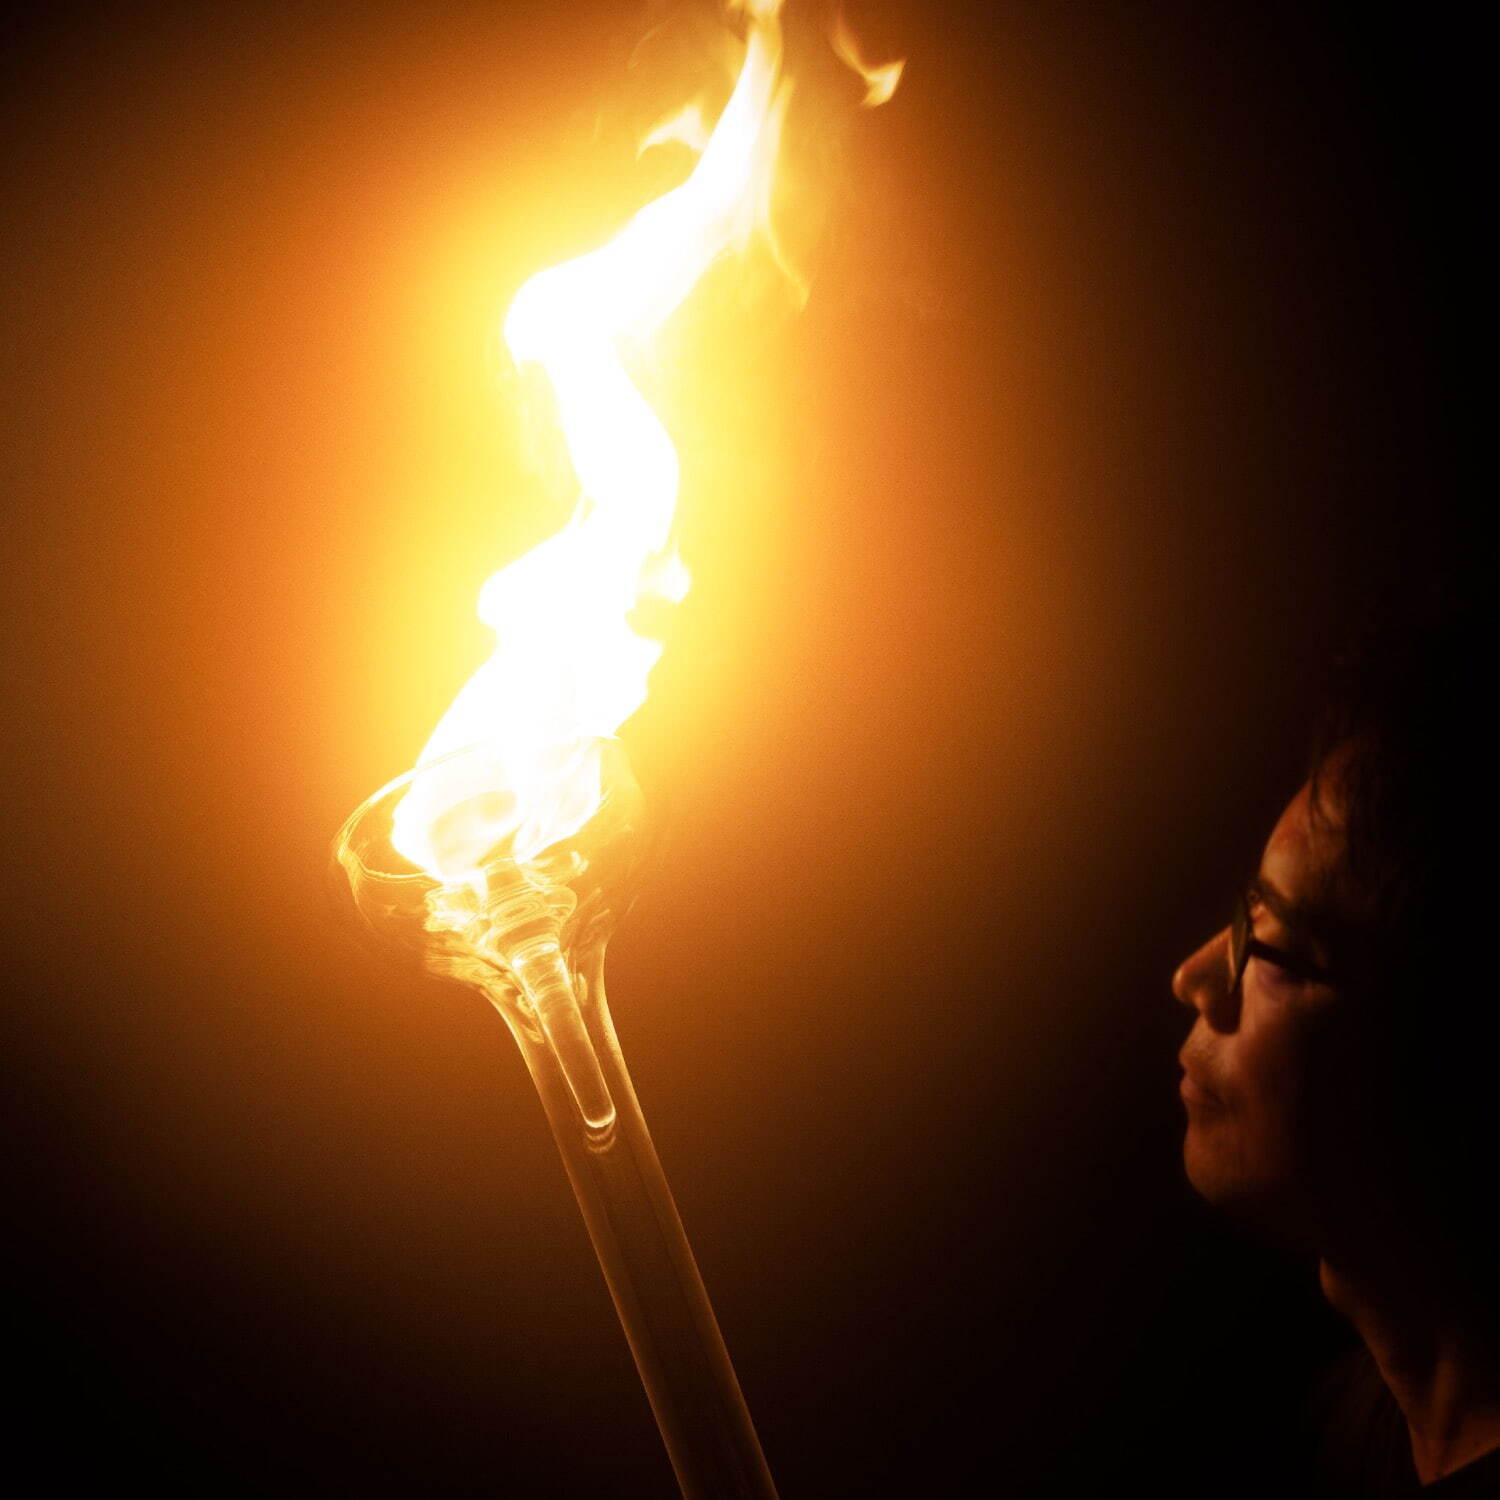 吉岡徳仁の展覧会が六本木で、炎から放たれる“光”に着目、“透明なガラスの造形”による新作を発表｜写真1